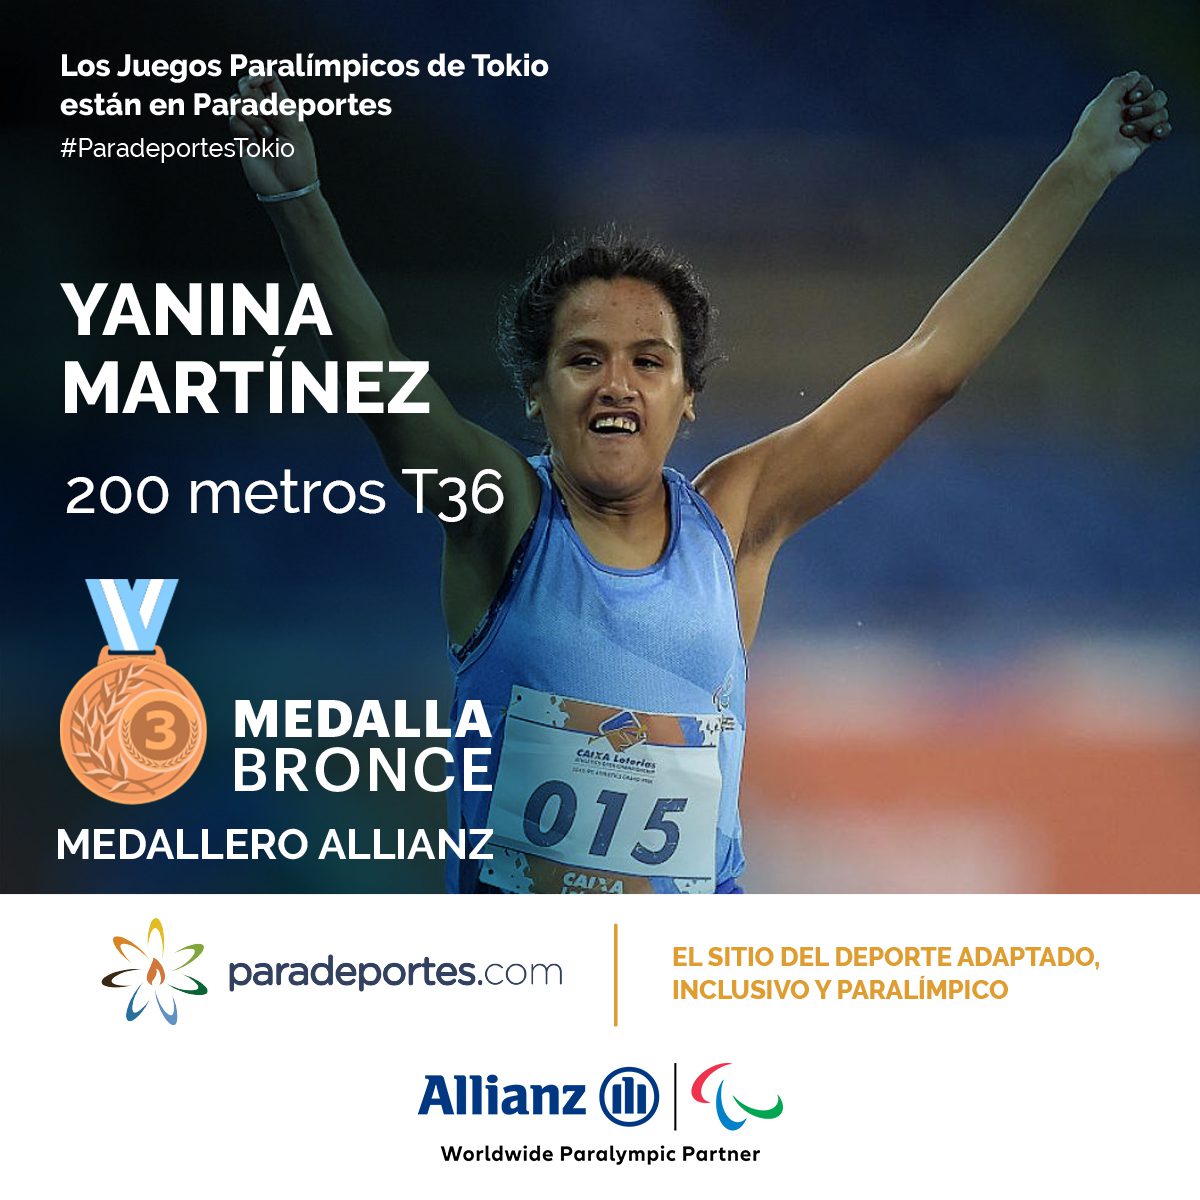 Nota: Yanina Martínez, medallista de bronce en los Juegos Paralímpicos